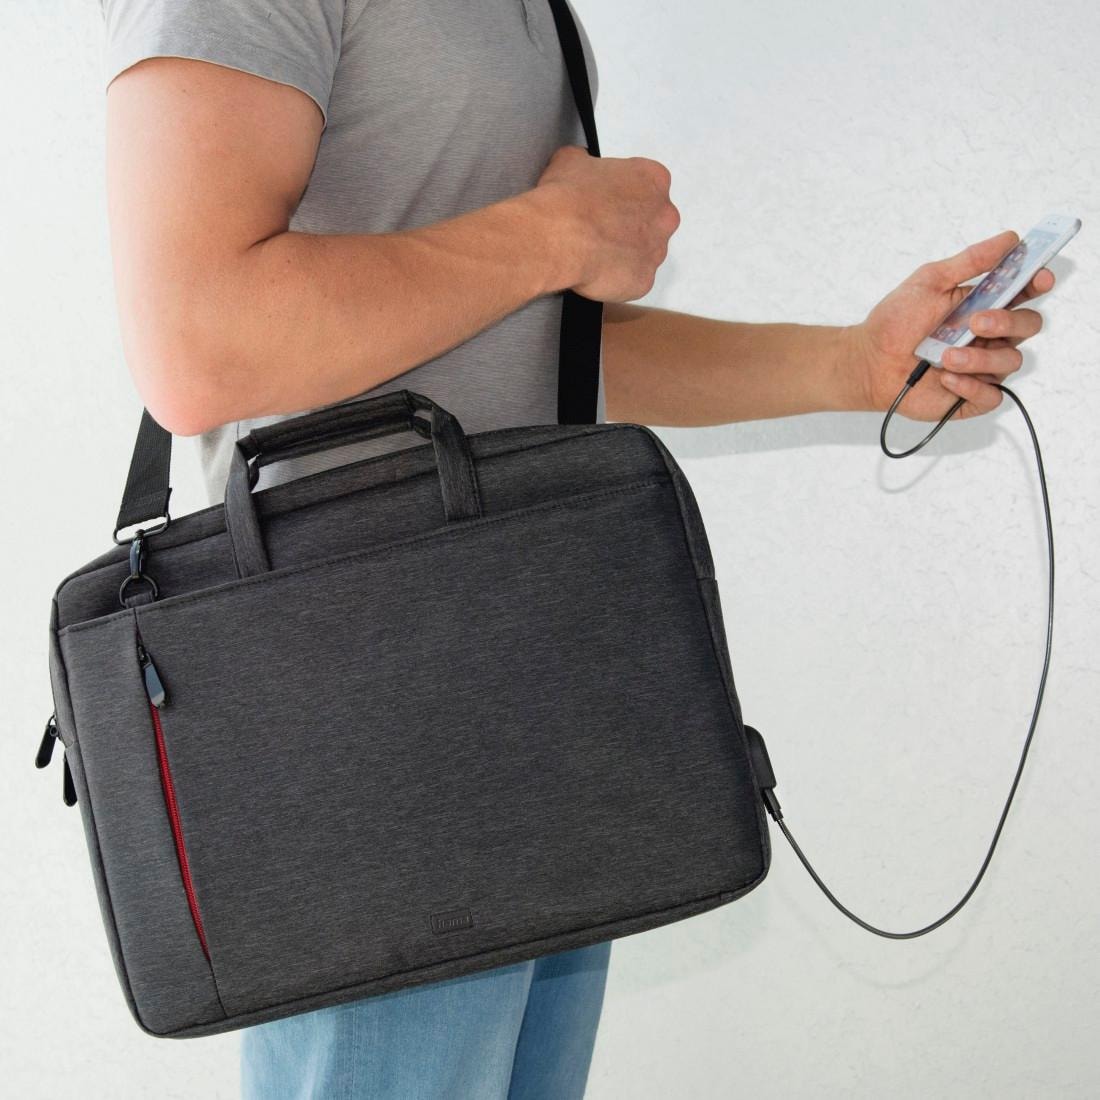 Hama Laptoptasche »Notebook Tasche bis 34 cm (13,3 Zoll), Farbe Schwarz, modisches Design«, Mit Tabletfach, Vordertaschen, Organizerstruktur, Trolleyband,USB-Port